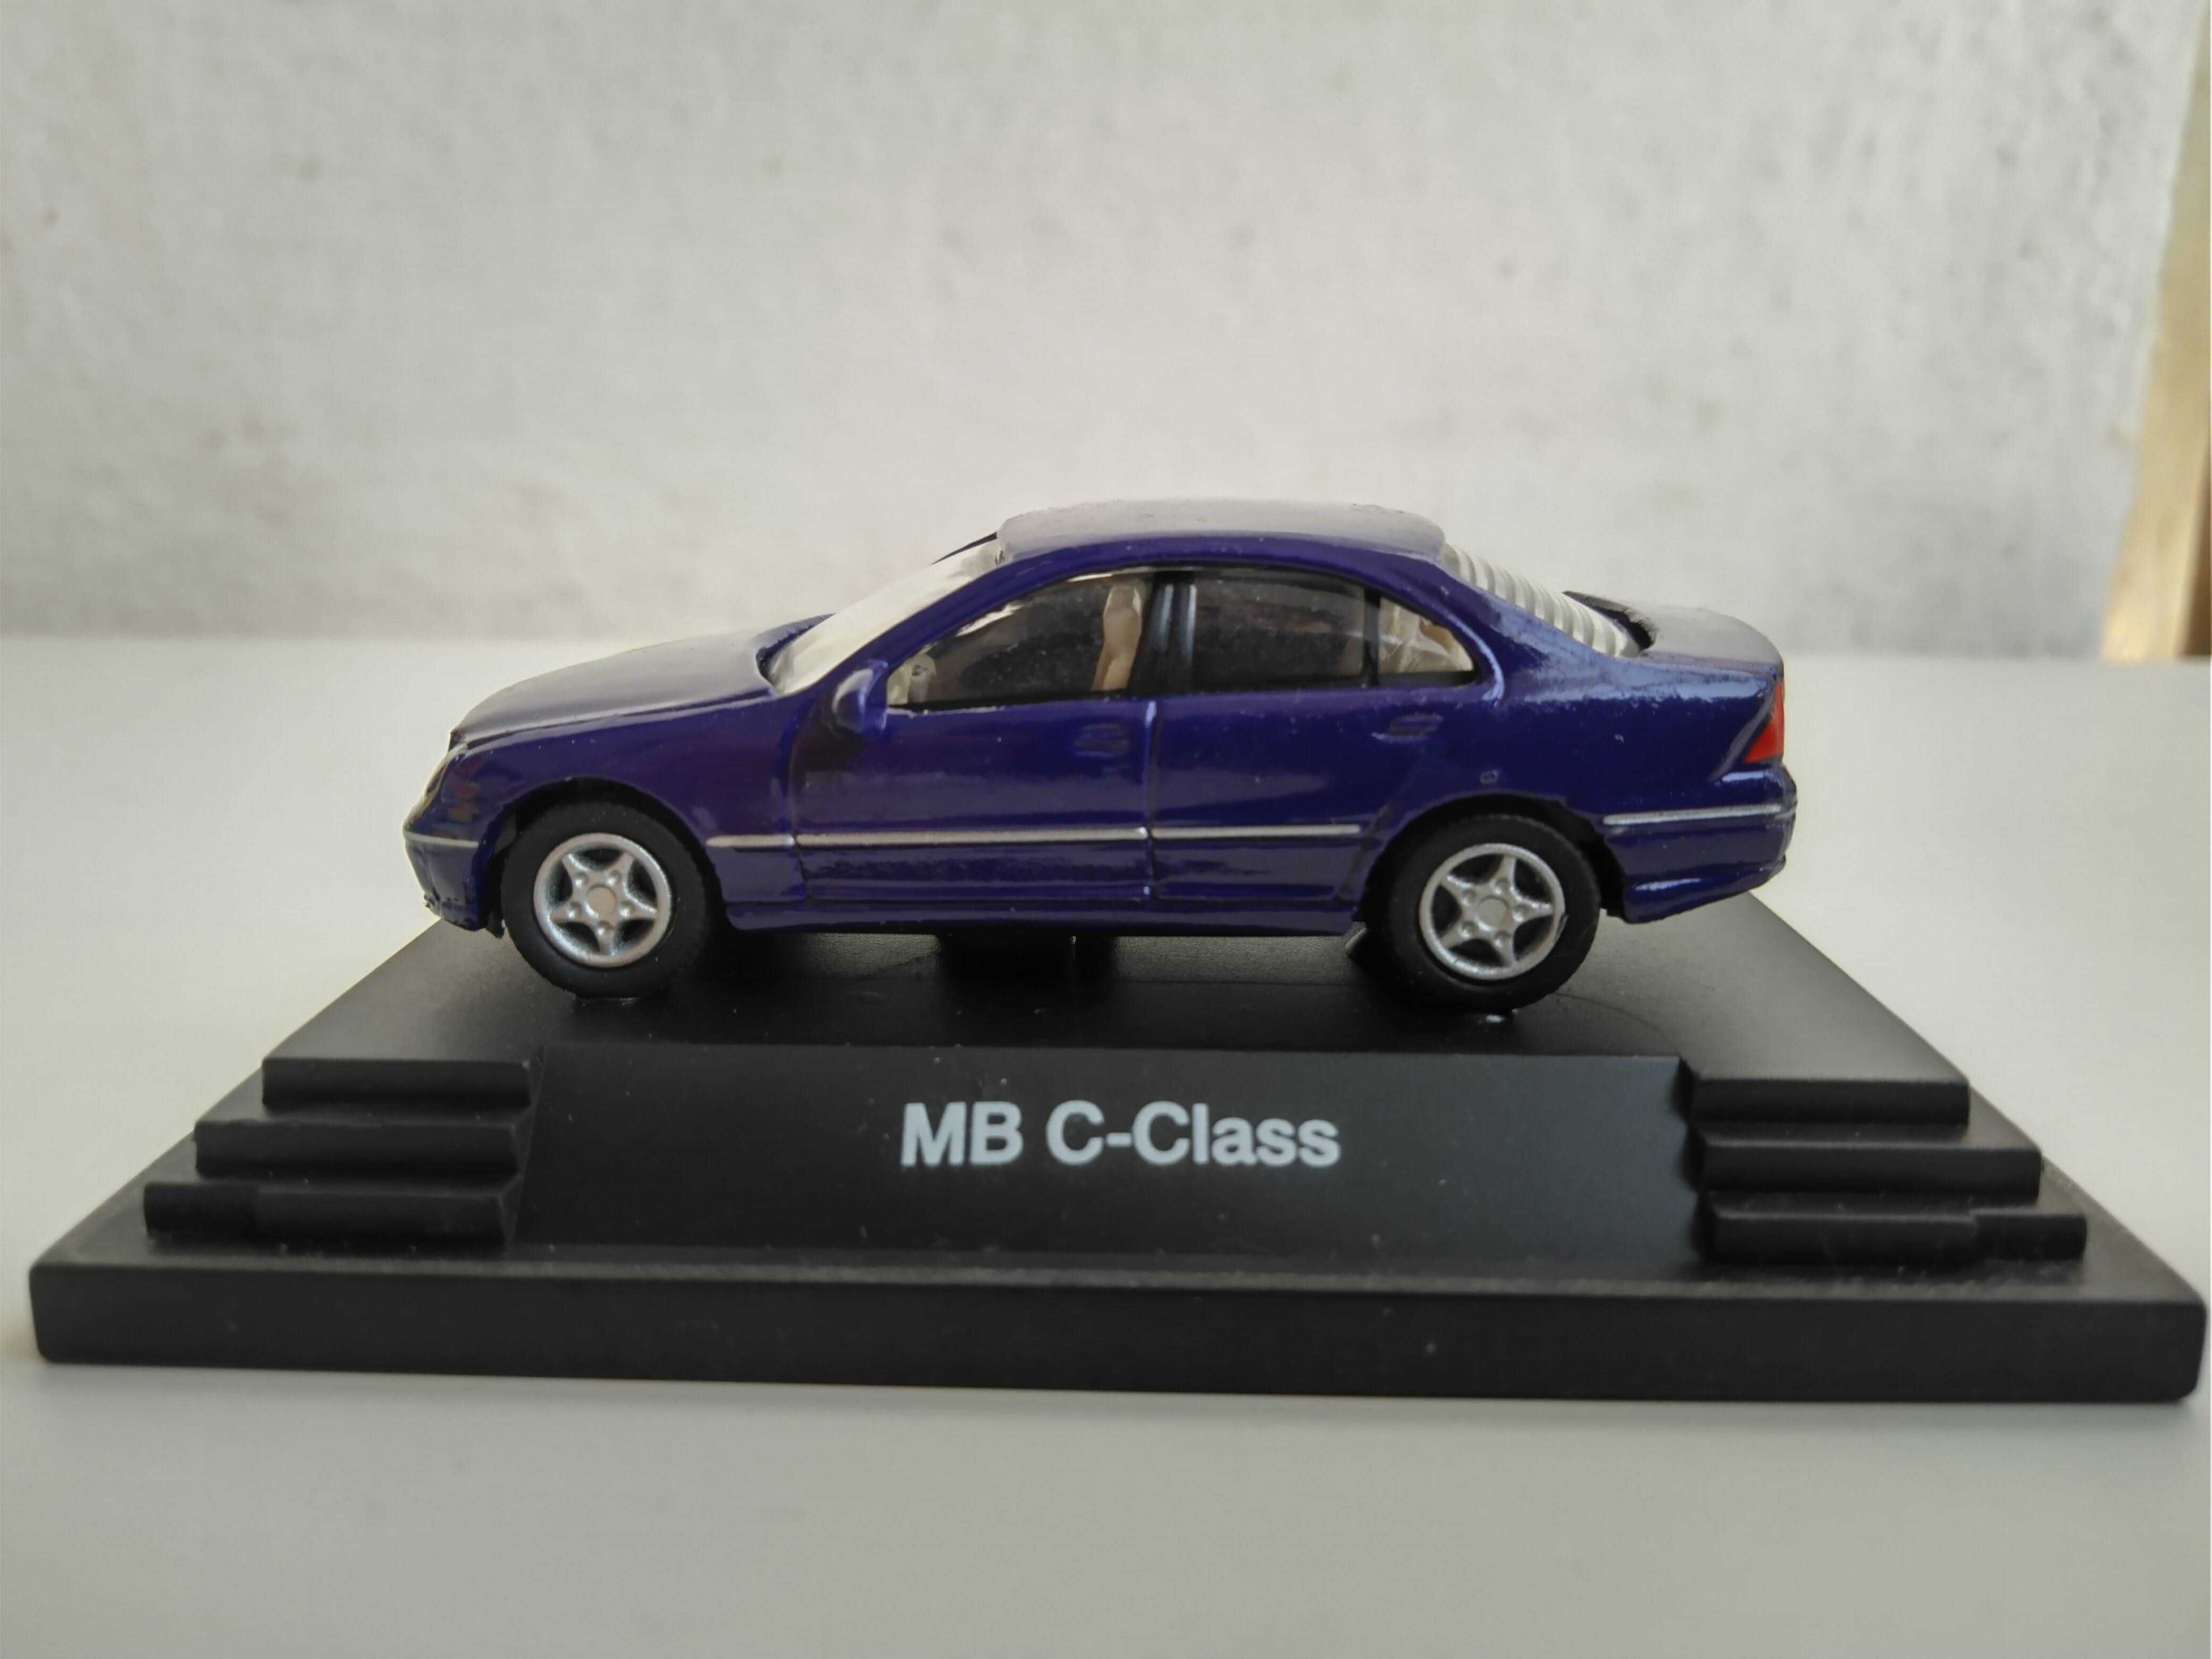 miniatura automóvel: Mercedes MB C-Class, ainda na caixa